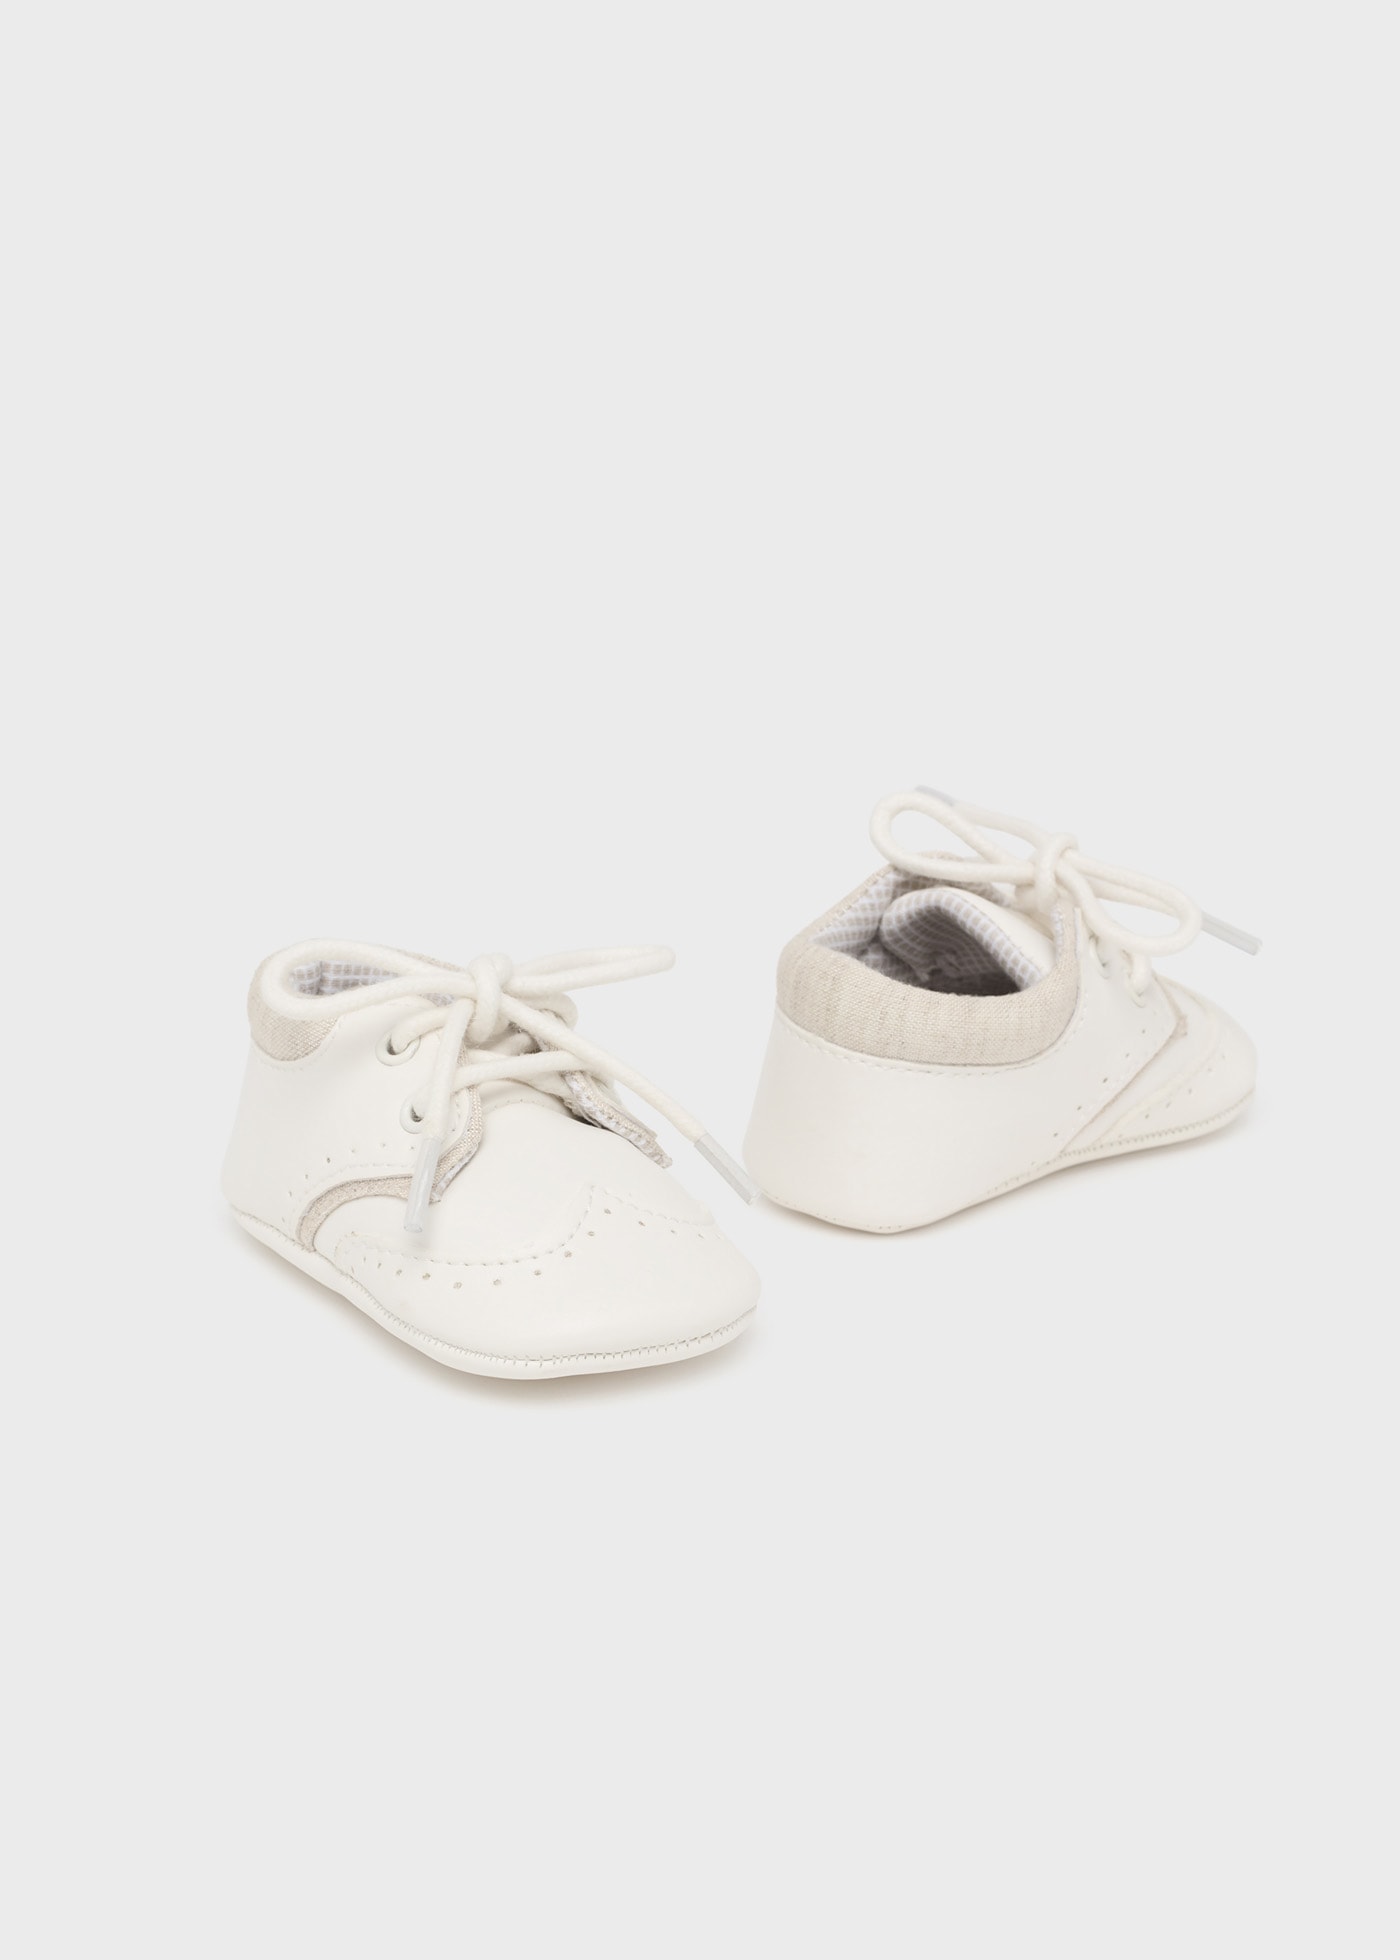 Zapatos cordones recién nacido